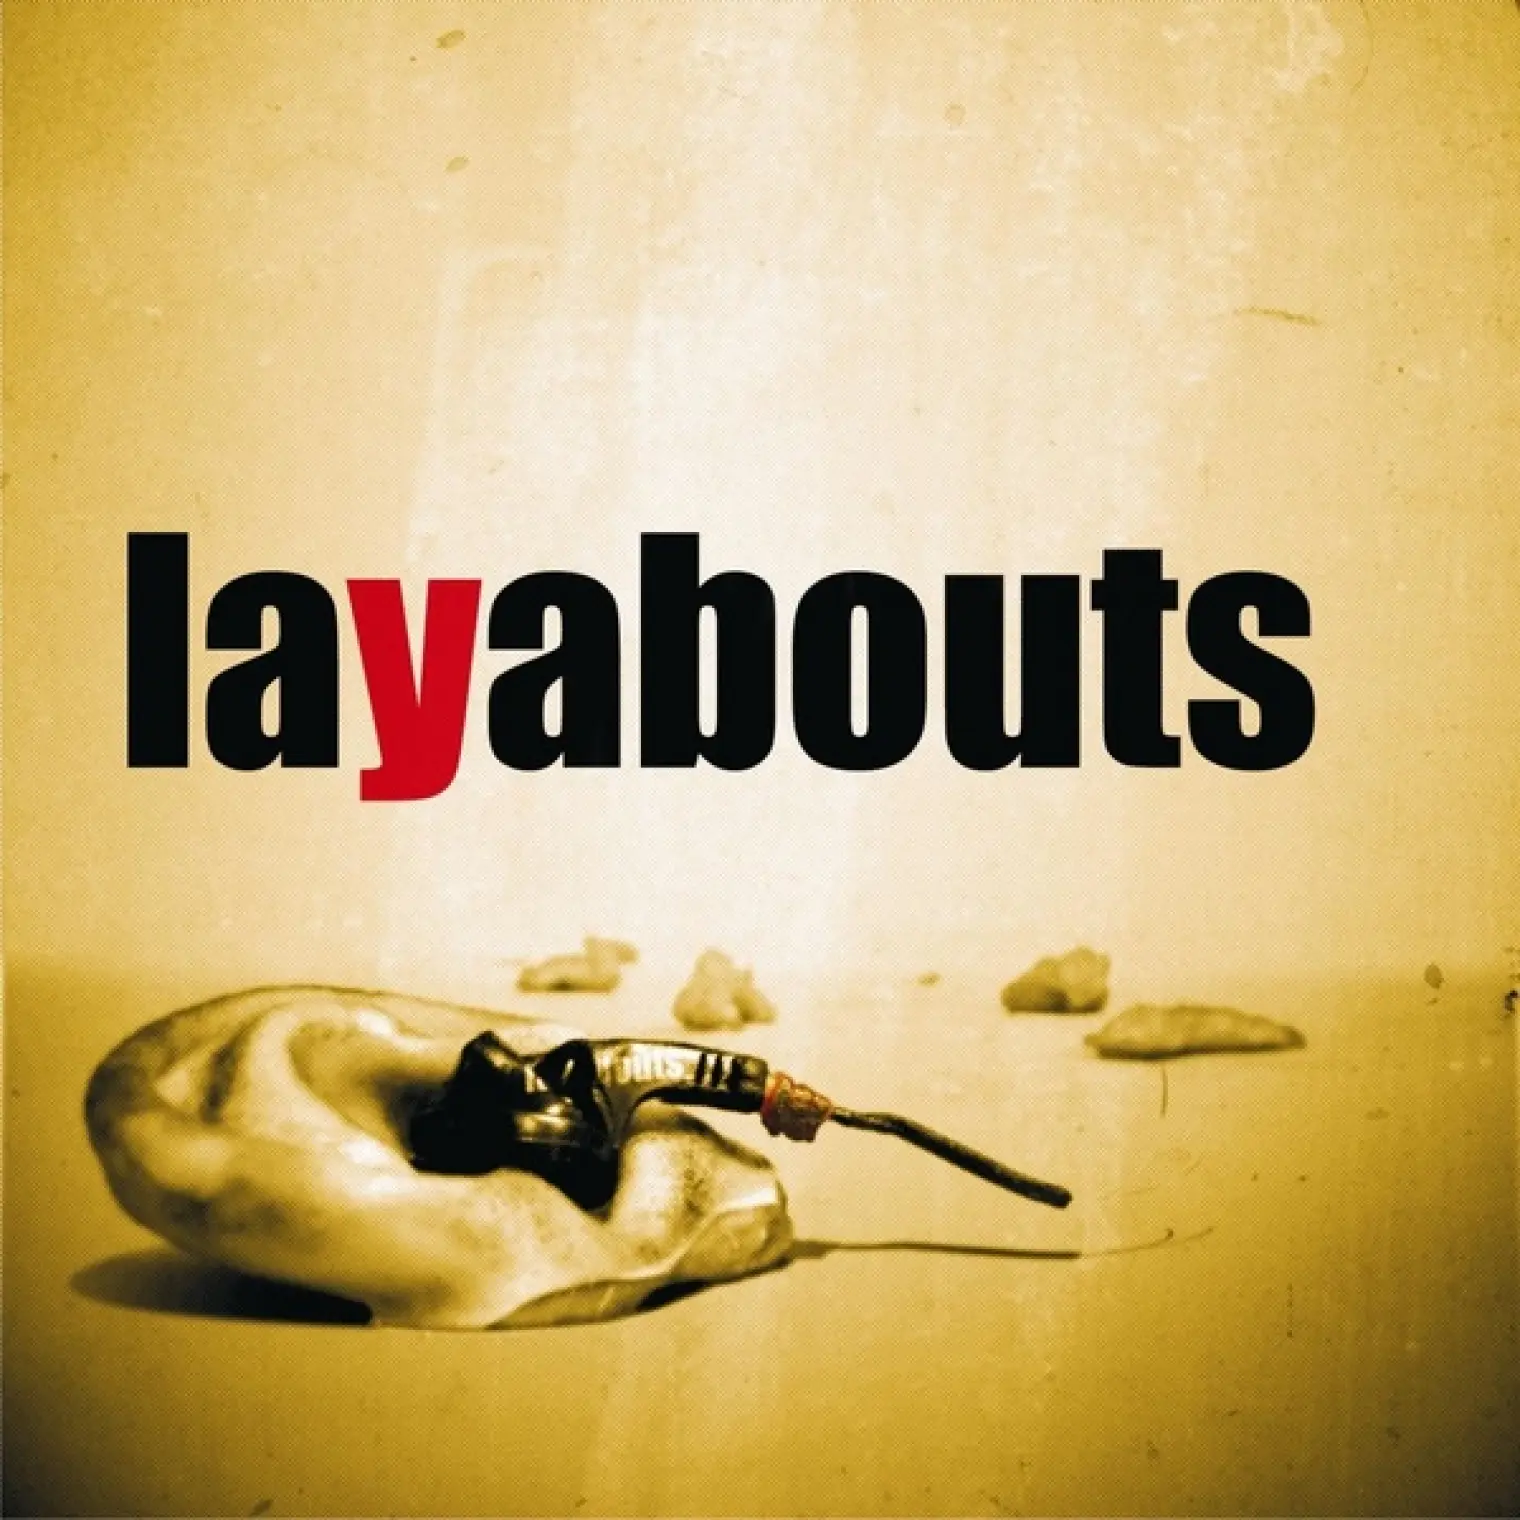 Layabouts -  Layabouts 